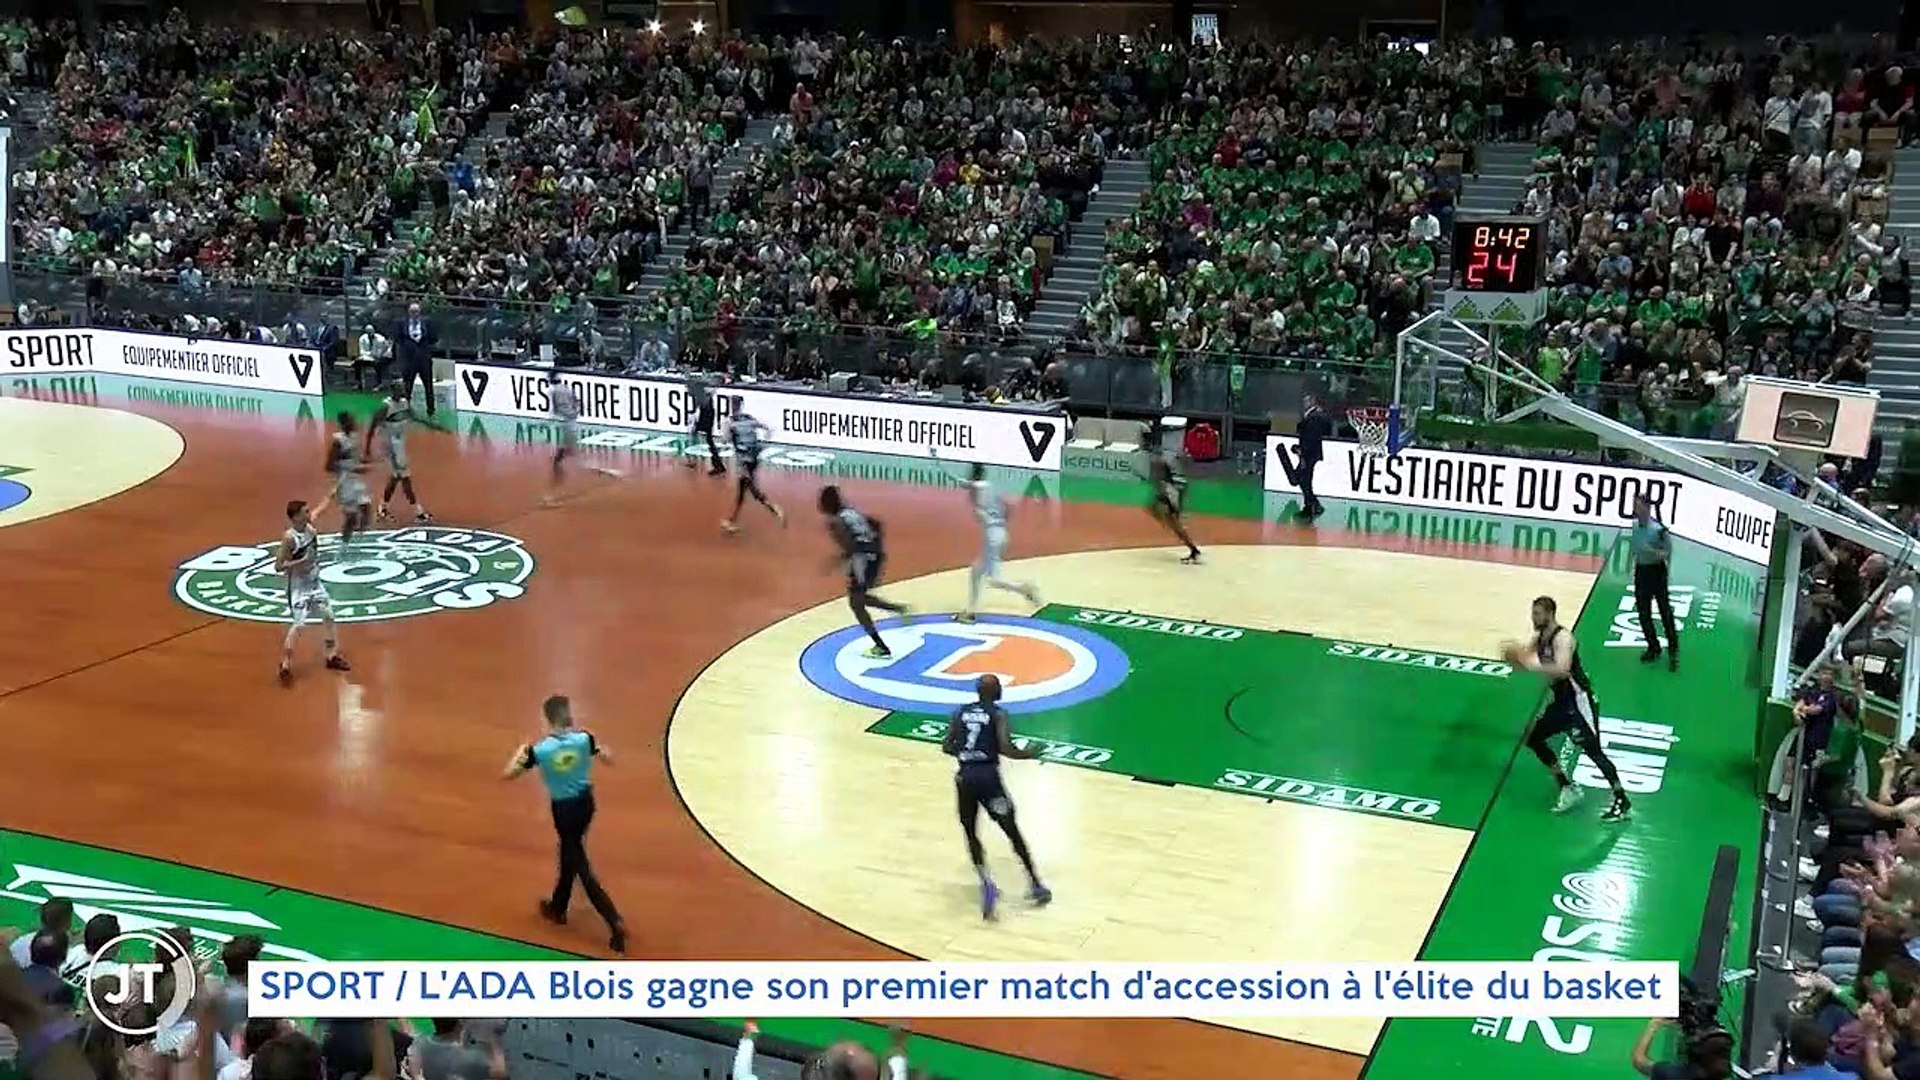 SPORT / L'ADA Blois gagne son premier match d'accession à l'élite du basket  - Vidéo Dailymotion